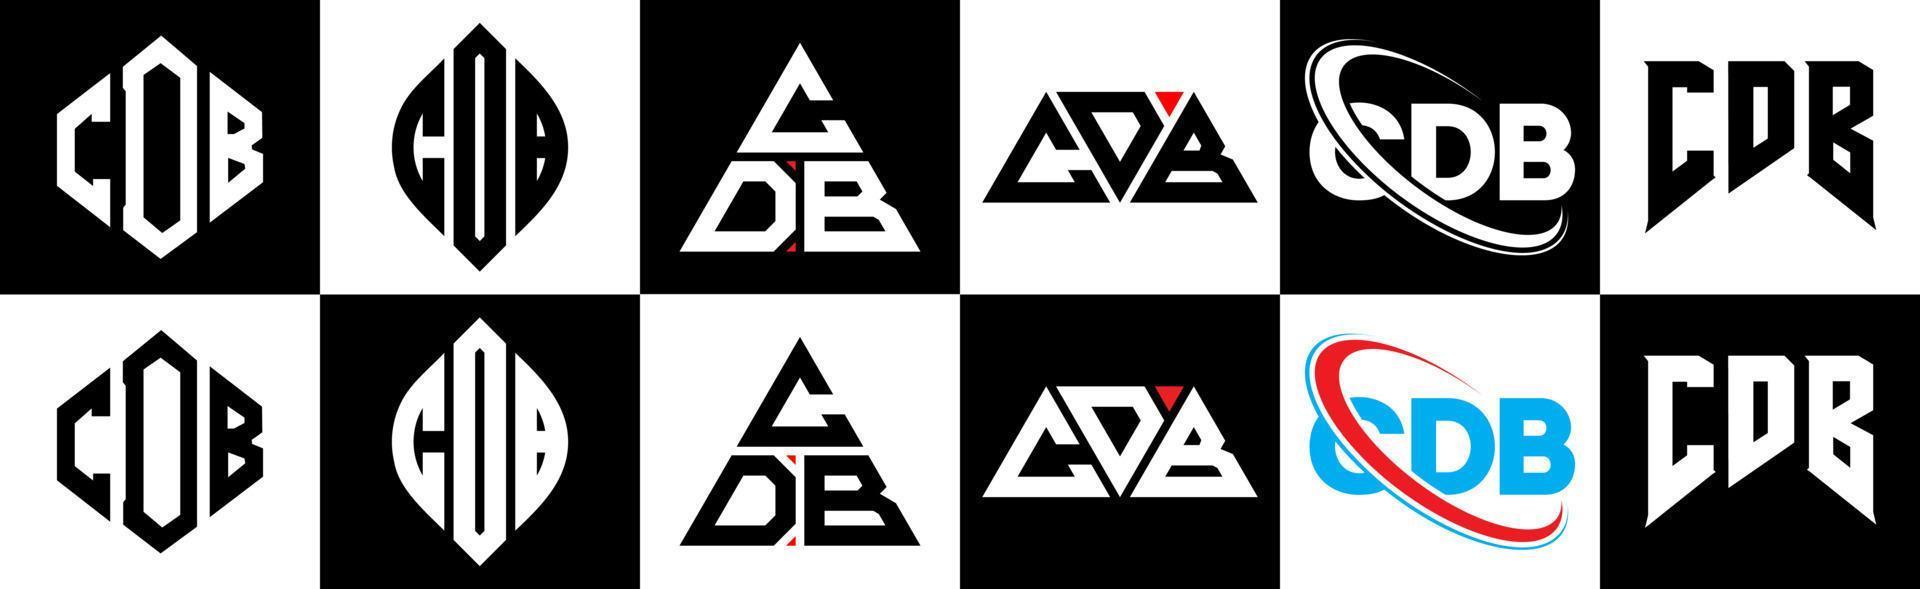 création de logo de lettre cdb en six styles. cdb polygone, cercle, triangle, hexagone, style plat et simple avec logo de lettre de variation de couleur noir et blanc dans un plan de travail. logo cdb minimaliste et classique vecteur